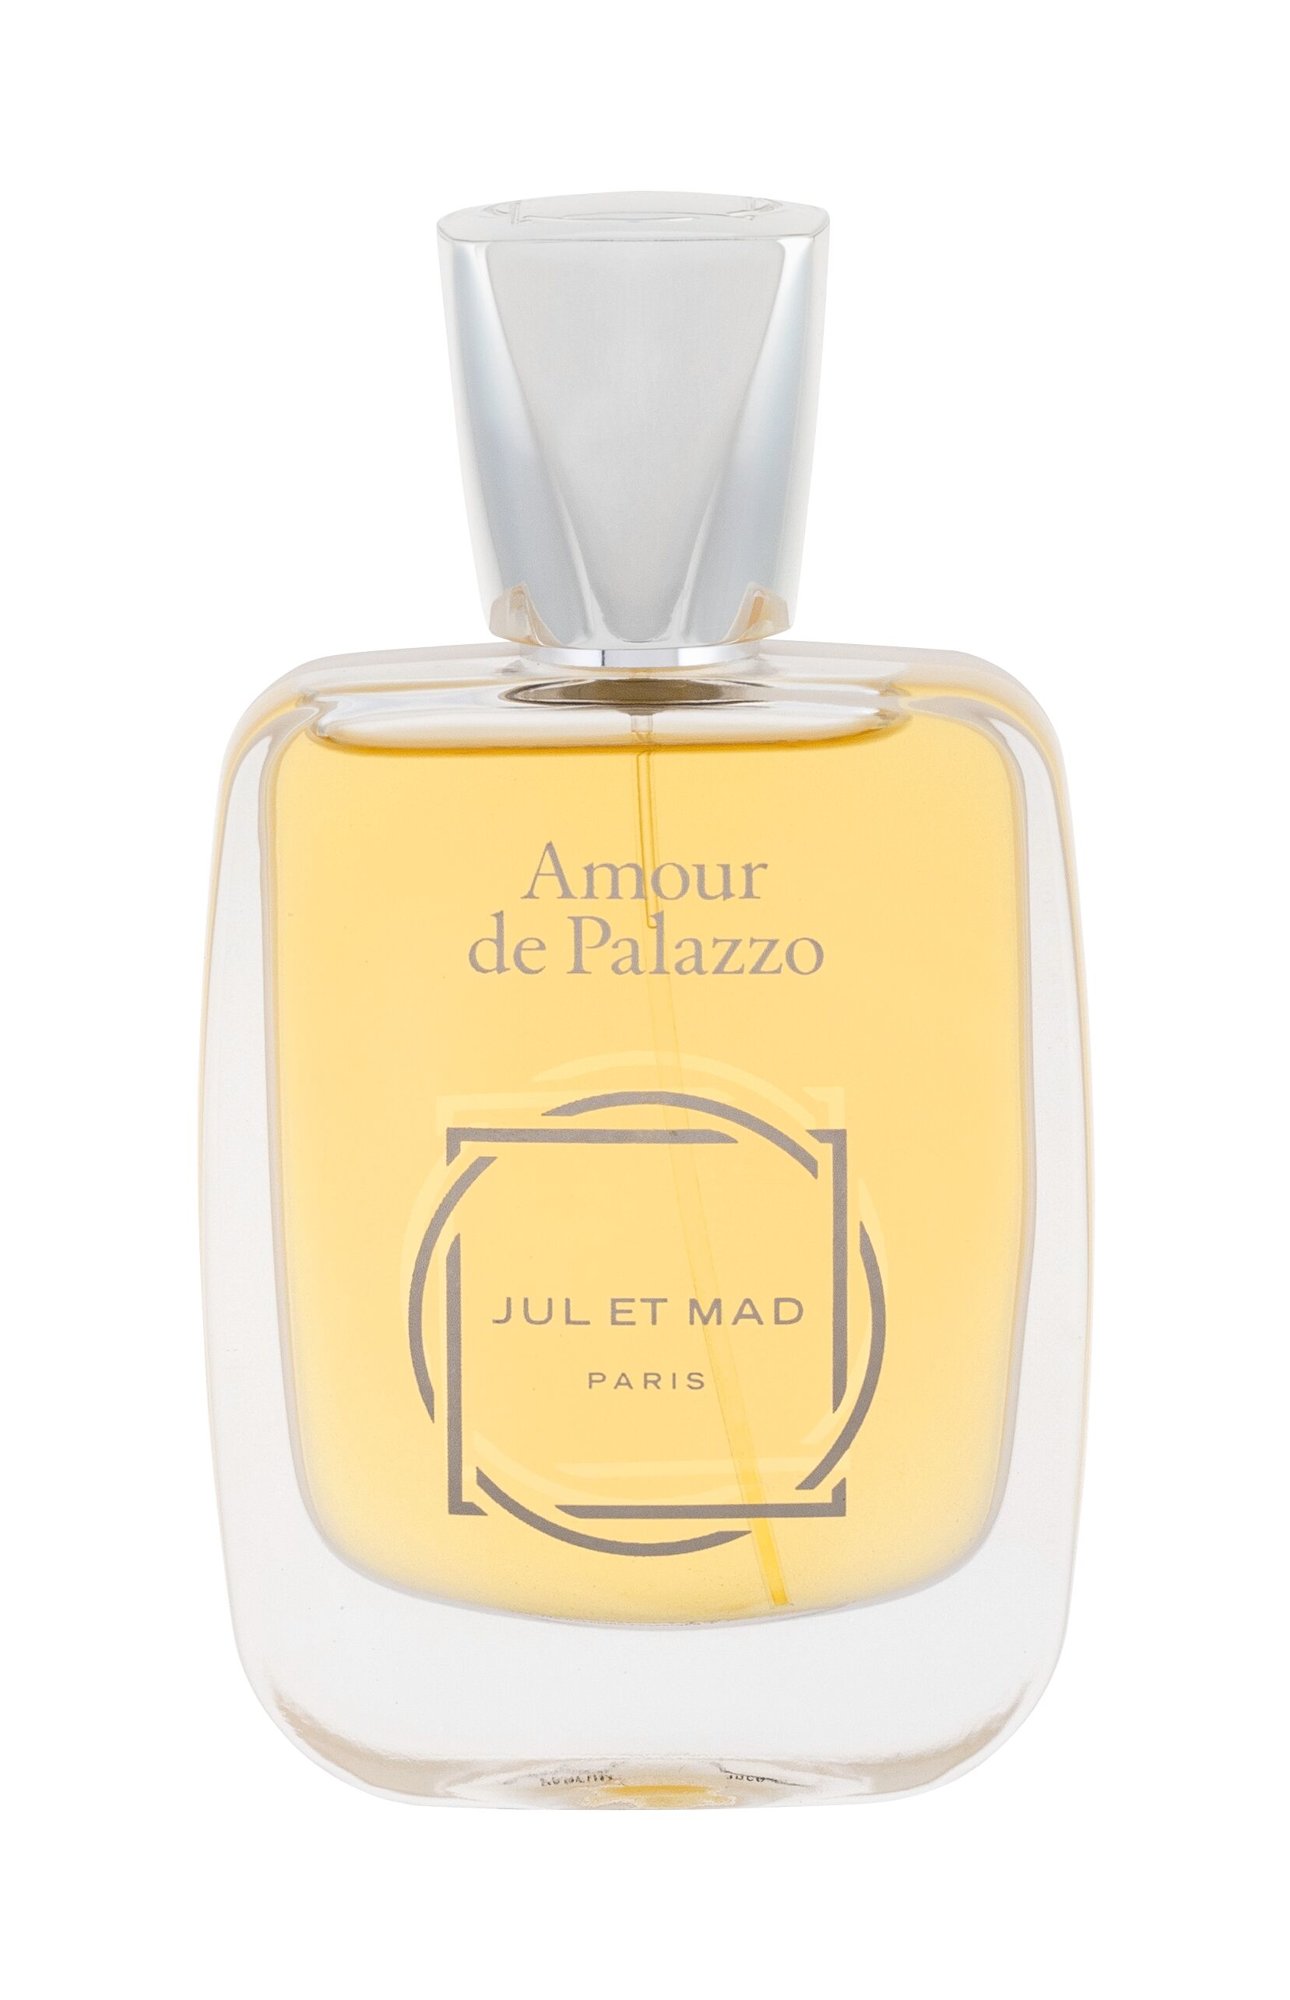 Jul et Mad Paris Amour de Palazzo 50ml NIŠINIAI Kvepalai Unisex Parfum (Pažeista pakuotė)